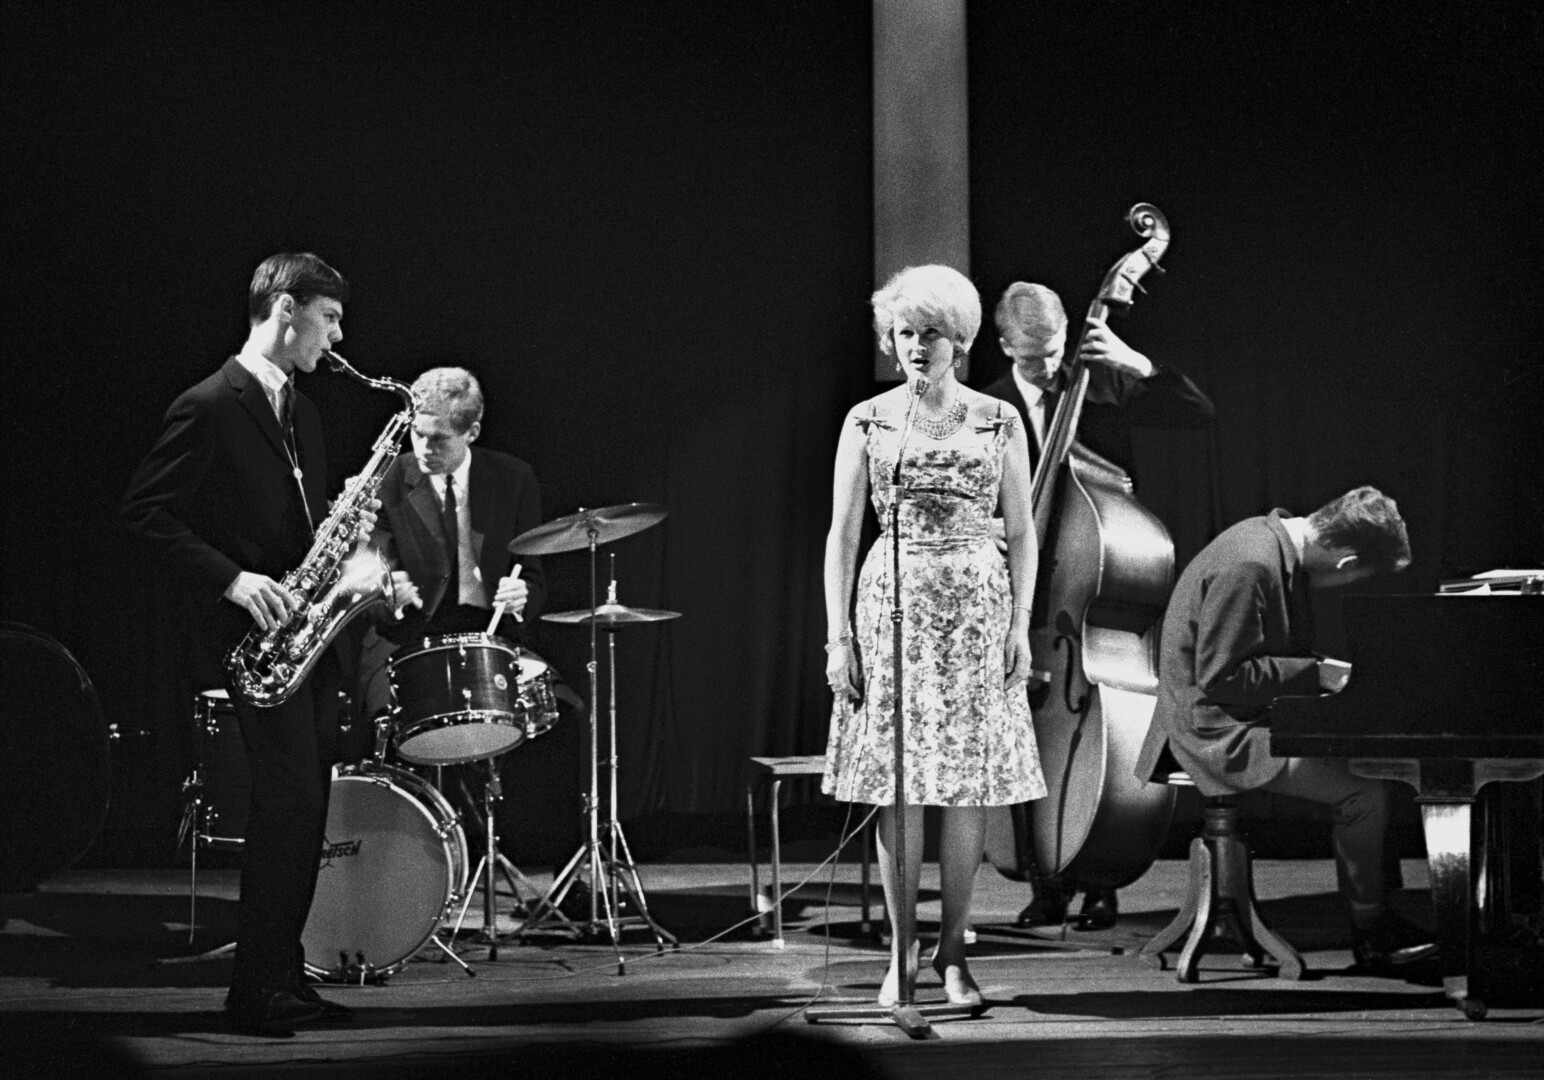 En annen status: Jazzen hadde en annen status i Norge da dette bildet ble tatt i Kongsberg i 1965. Samme år etablerte blant annet Karin Krog (i midten) og Jan Garbarek (t.v.) Norsk jazzforum, for å heve jazzens anseelse. Ellers på bildet: Jon Christensen, Per Løberg og Terje Bjørklund.